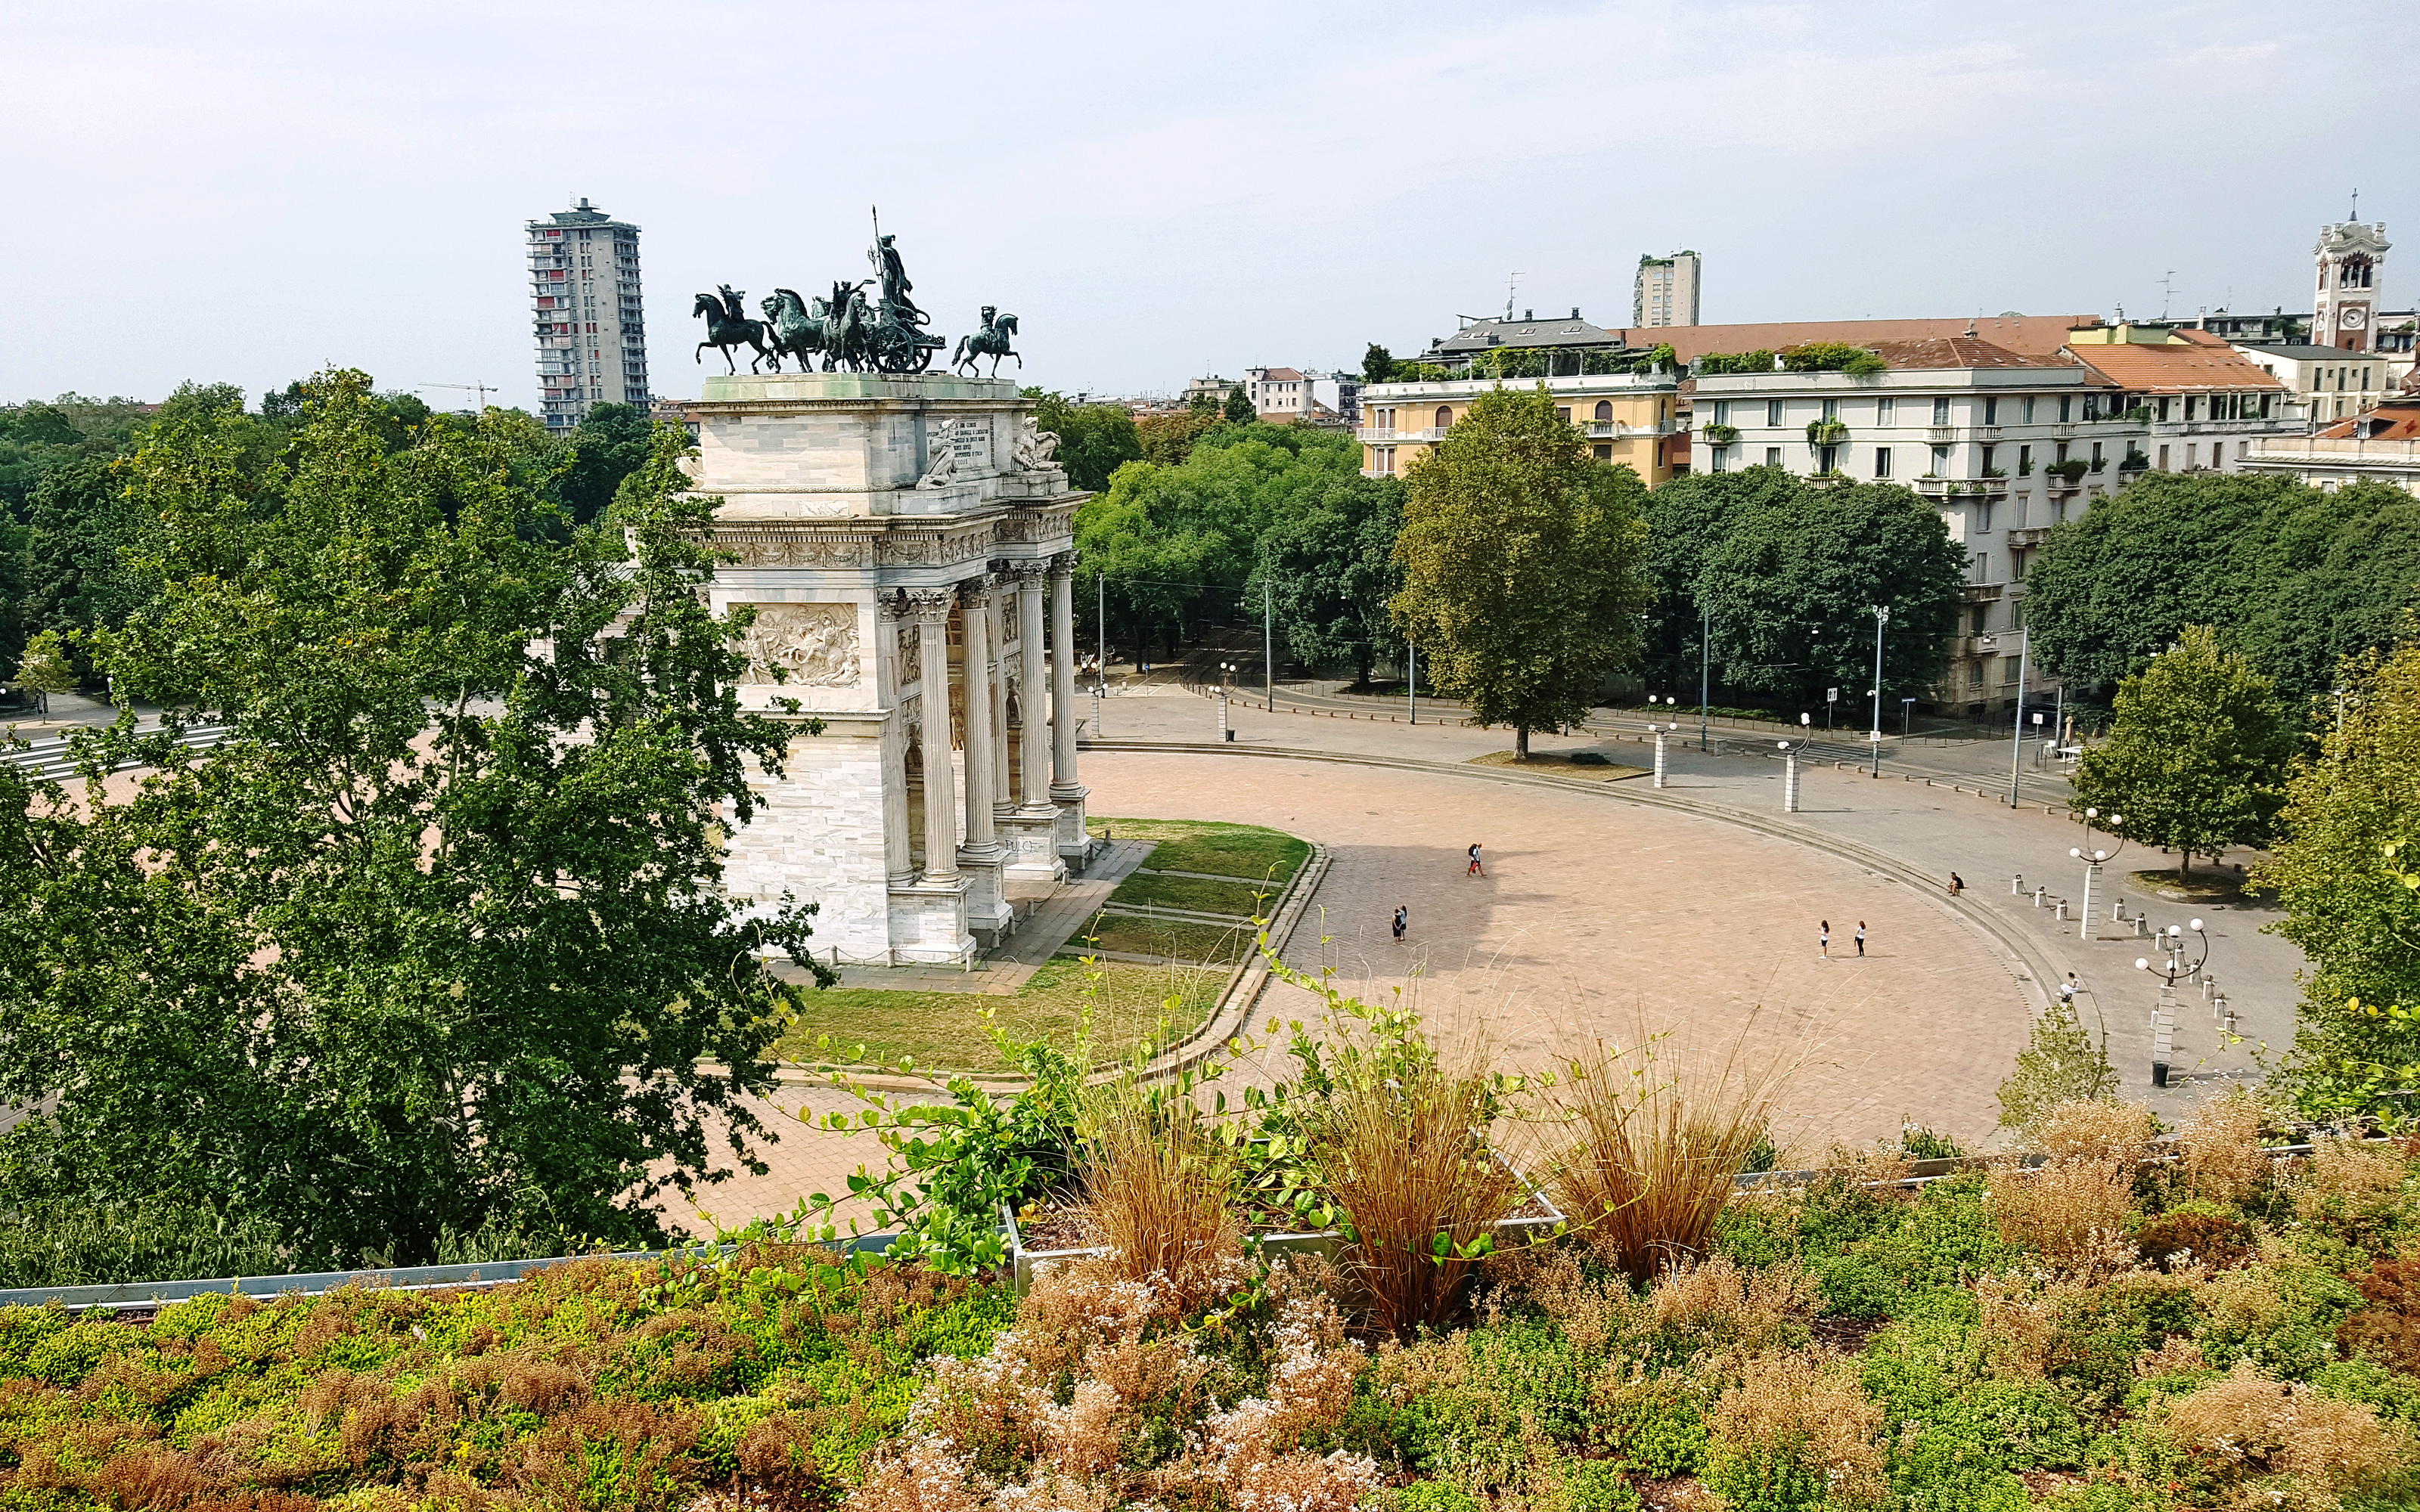 Vista del "Arco della Pace" desde una cubierta verde